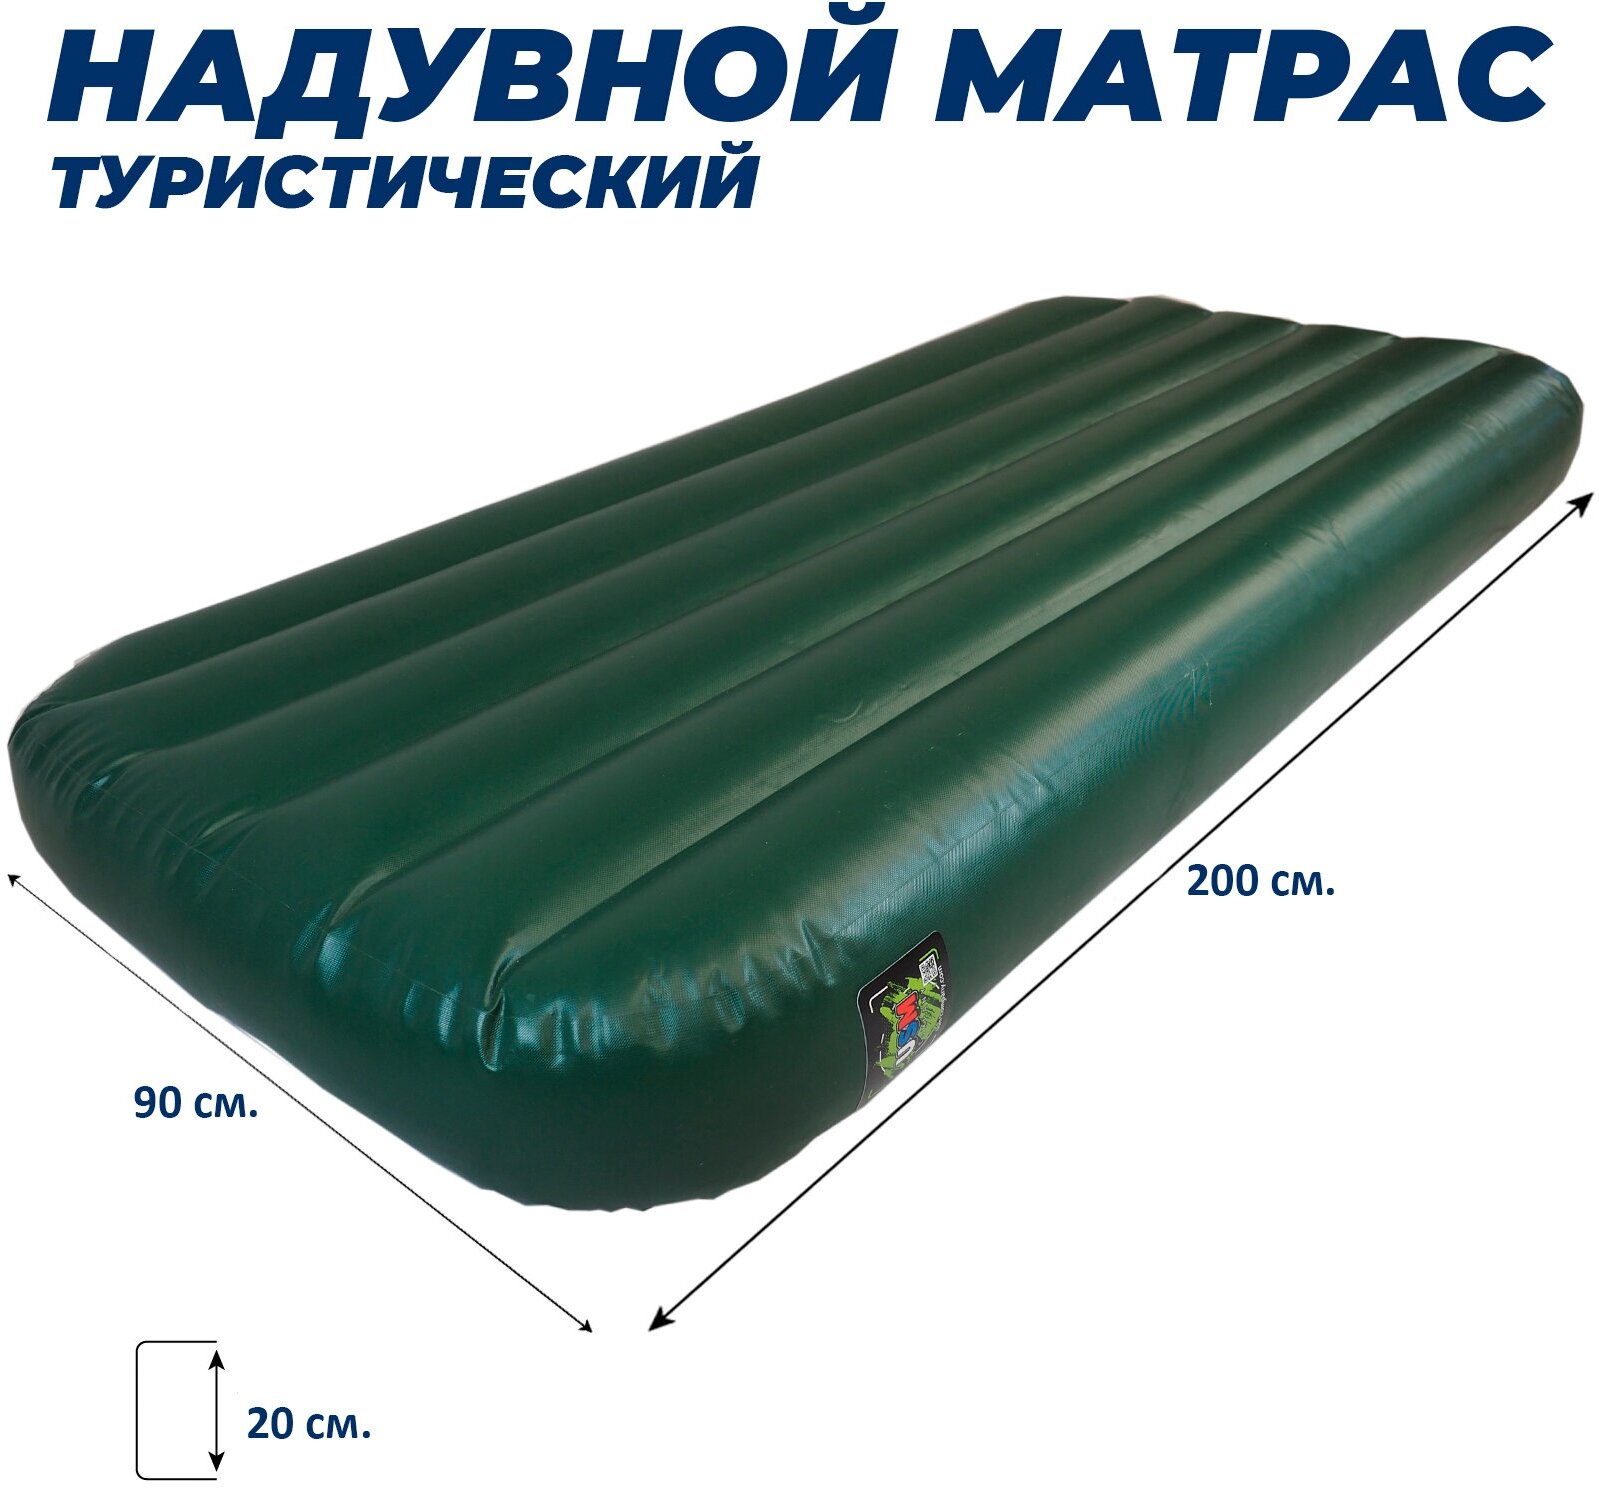 Надувной матрас для походов/200х90х20 см/Матрас ПВХ надувной/Color зеленый